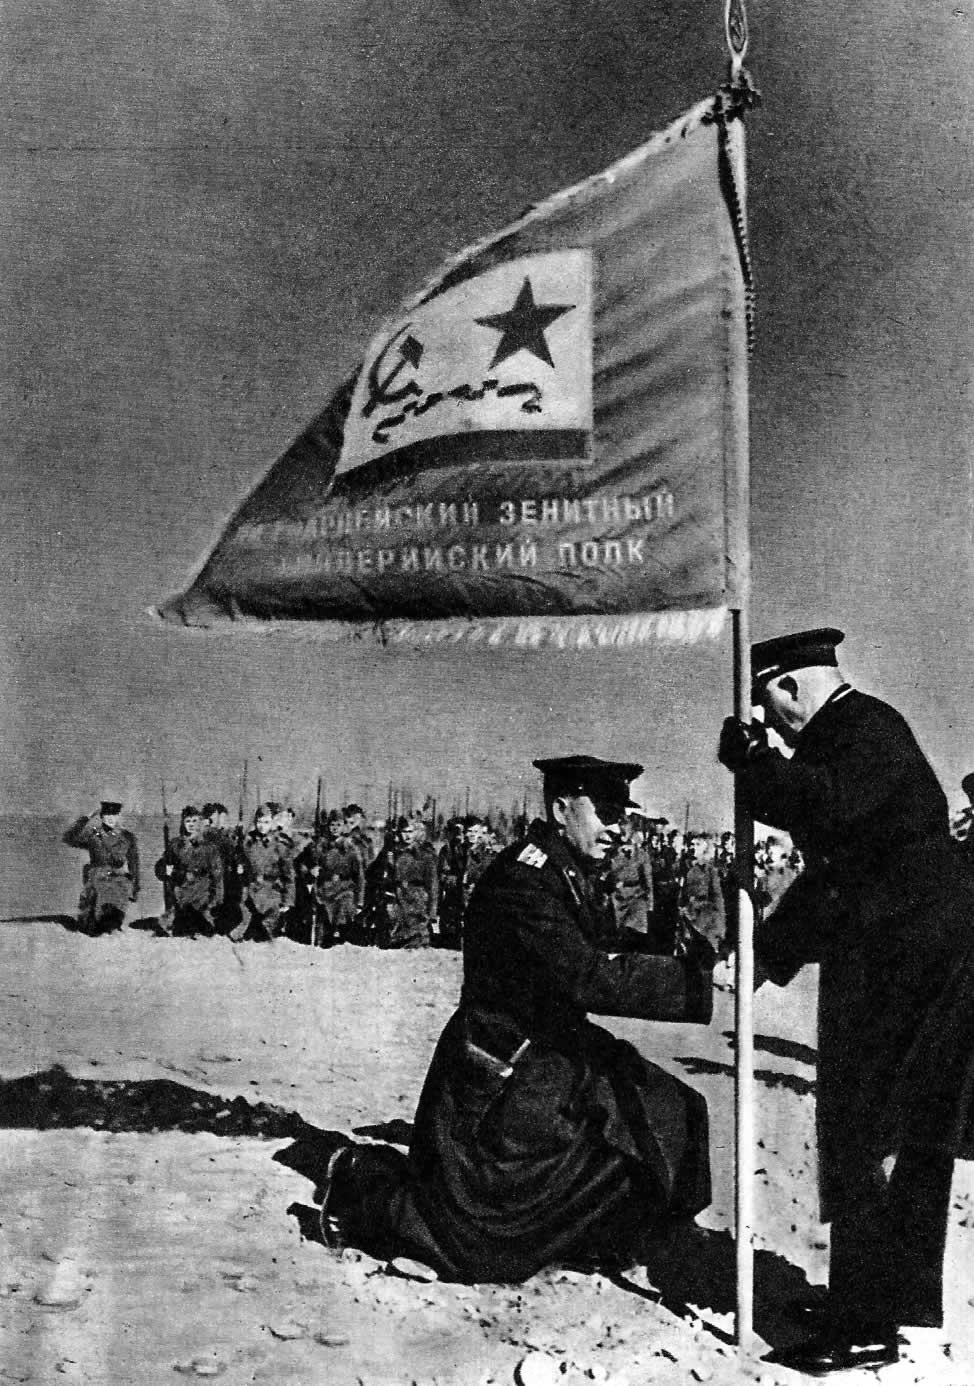 Командующий Черноморским флотом Ф.С.Октябрьский вручает гвардейское знамя 1-му зенитному артиллерийскому полку. 1943г.